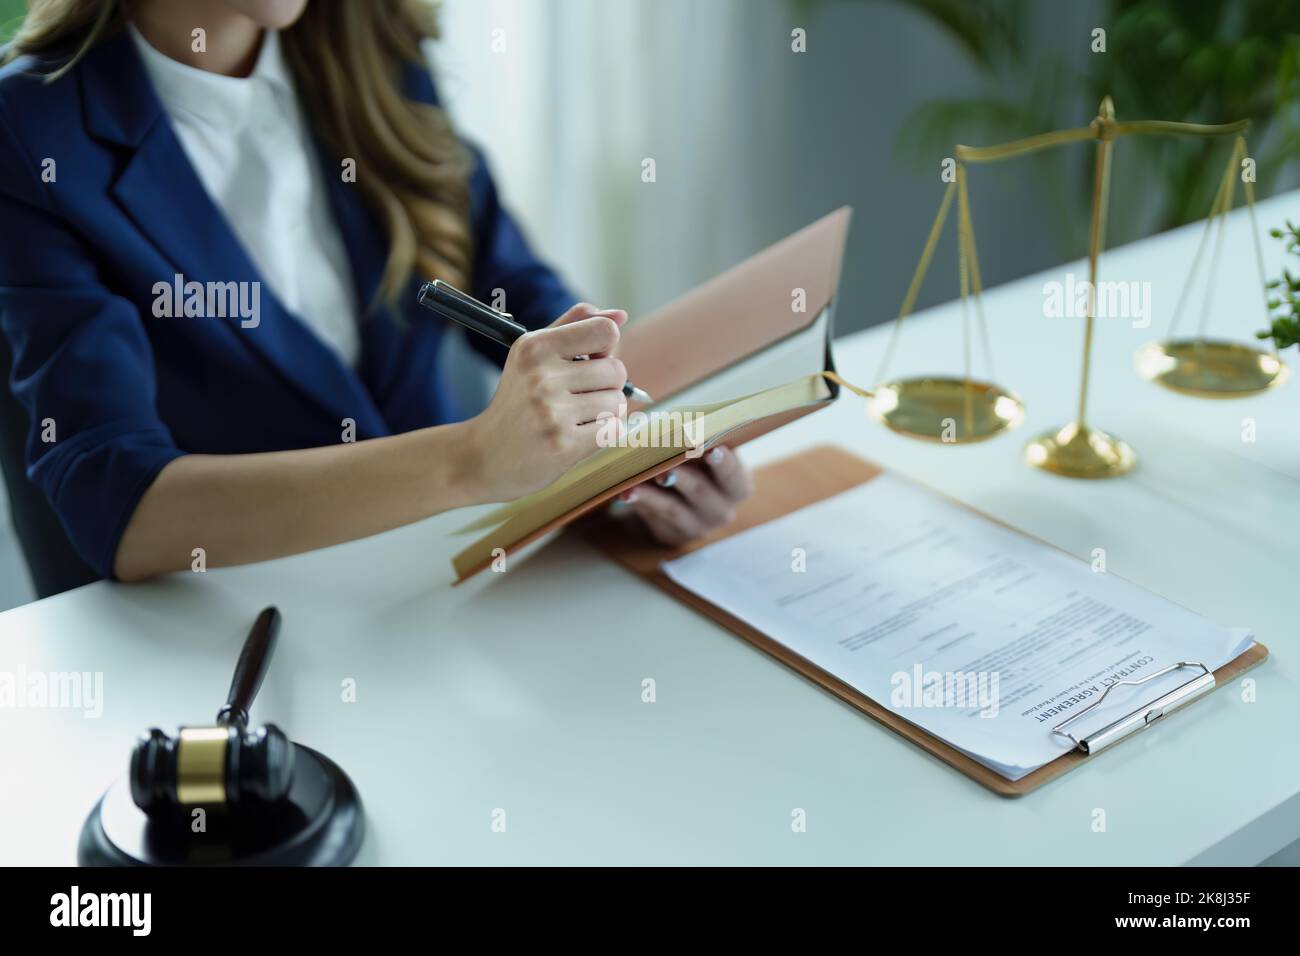 Porträt eines jungen asiatischen Rechtsanwalts, der eine Klage für einen Kunden studiert und dabei Notebooks und Papierkram auf einem Schreibtisch verwendet Stockfoto